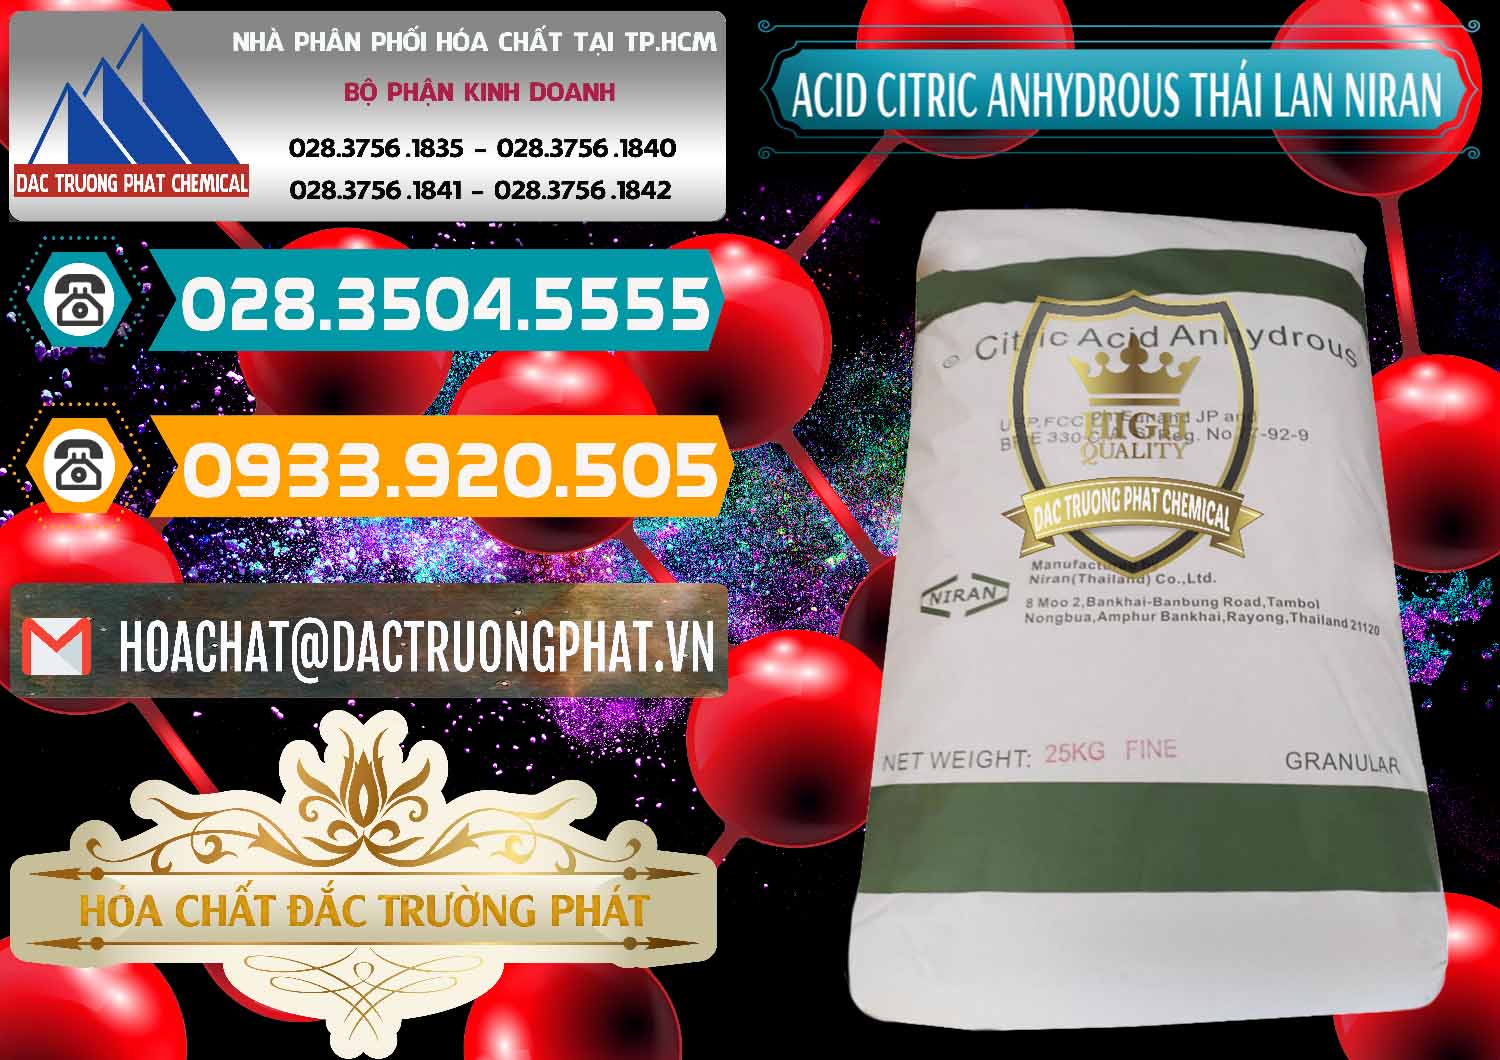 Nơi chuyên bán _ cung cấp Acid Citric - Axit Citric Anhydrous - Thái Lan Niran - 0231 - Đơn vị chuyên cung cấp - kinh doanh hóa chất tại TP.HCM - congtyhoachat.vn